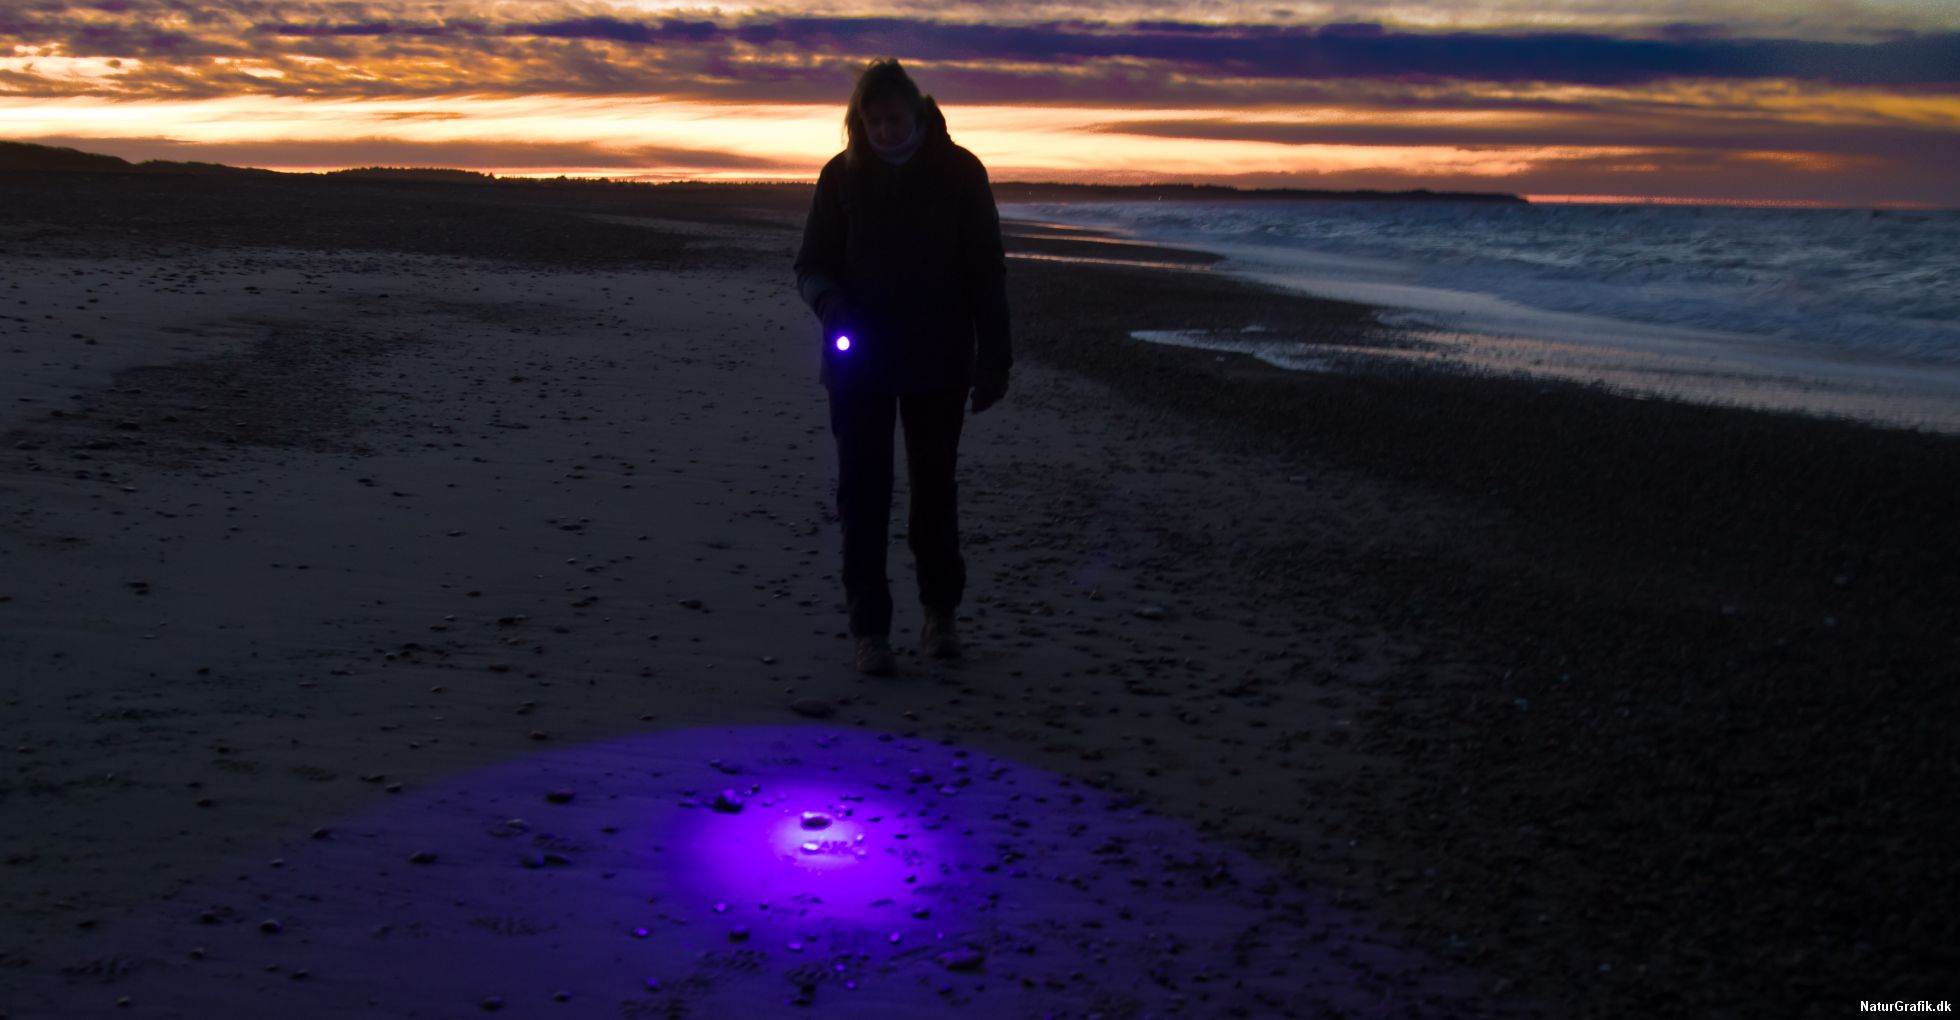 Melting Menagerry opdagelse Find rav med UV-lys - NaturGuide.dk - natur og friluftsliv